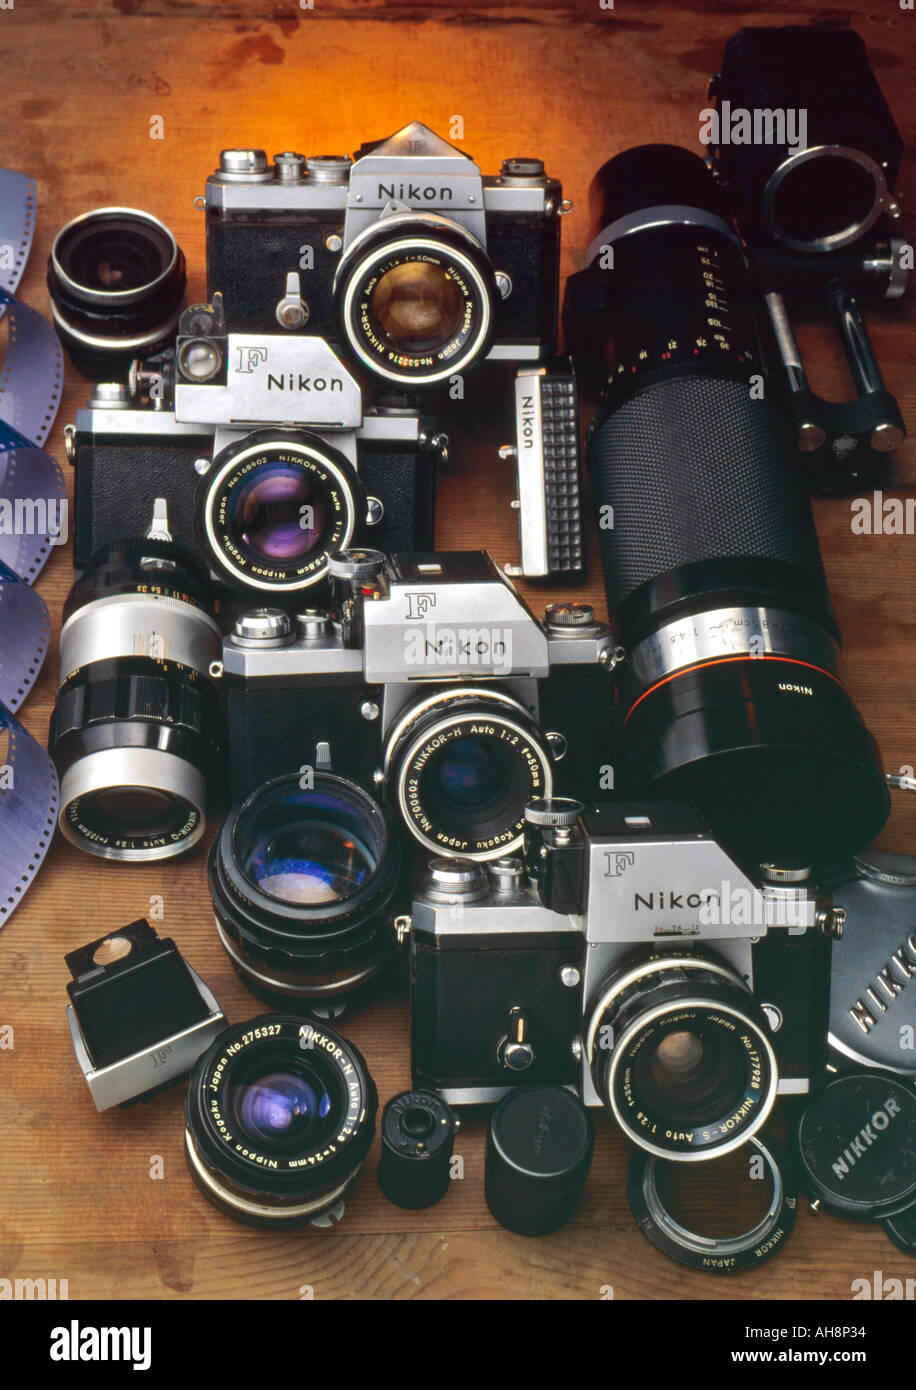 Las cámaras SLR de Nikon F Cuerpos lentes gran angular tele lente fotográfica prisma film finder cap Evolución de la fotografía Foto de stock